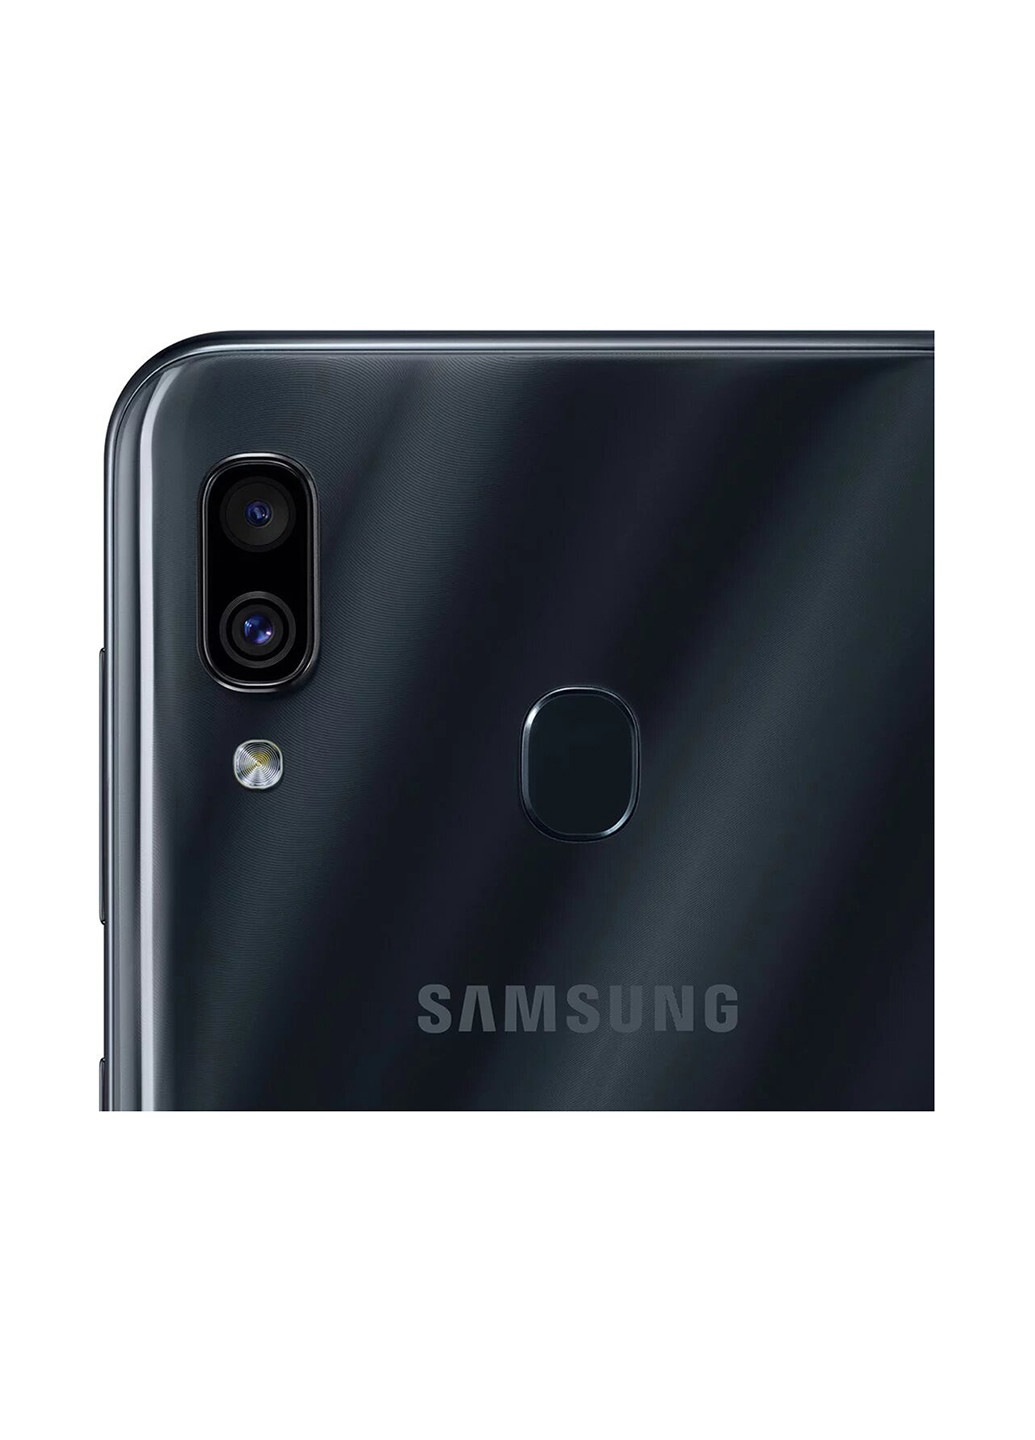 Смартфон Galaxy A30 4 / 64GB Black (SM-A305FZKOSEK) Samsung galaxy a30 4/64gb black (sm-a305fzkosek) (151485042)